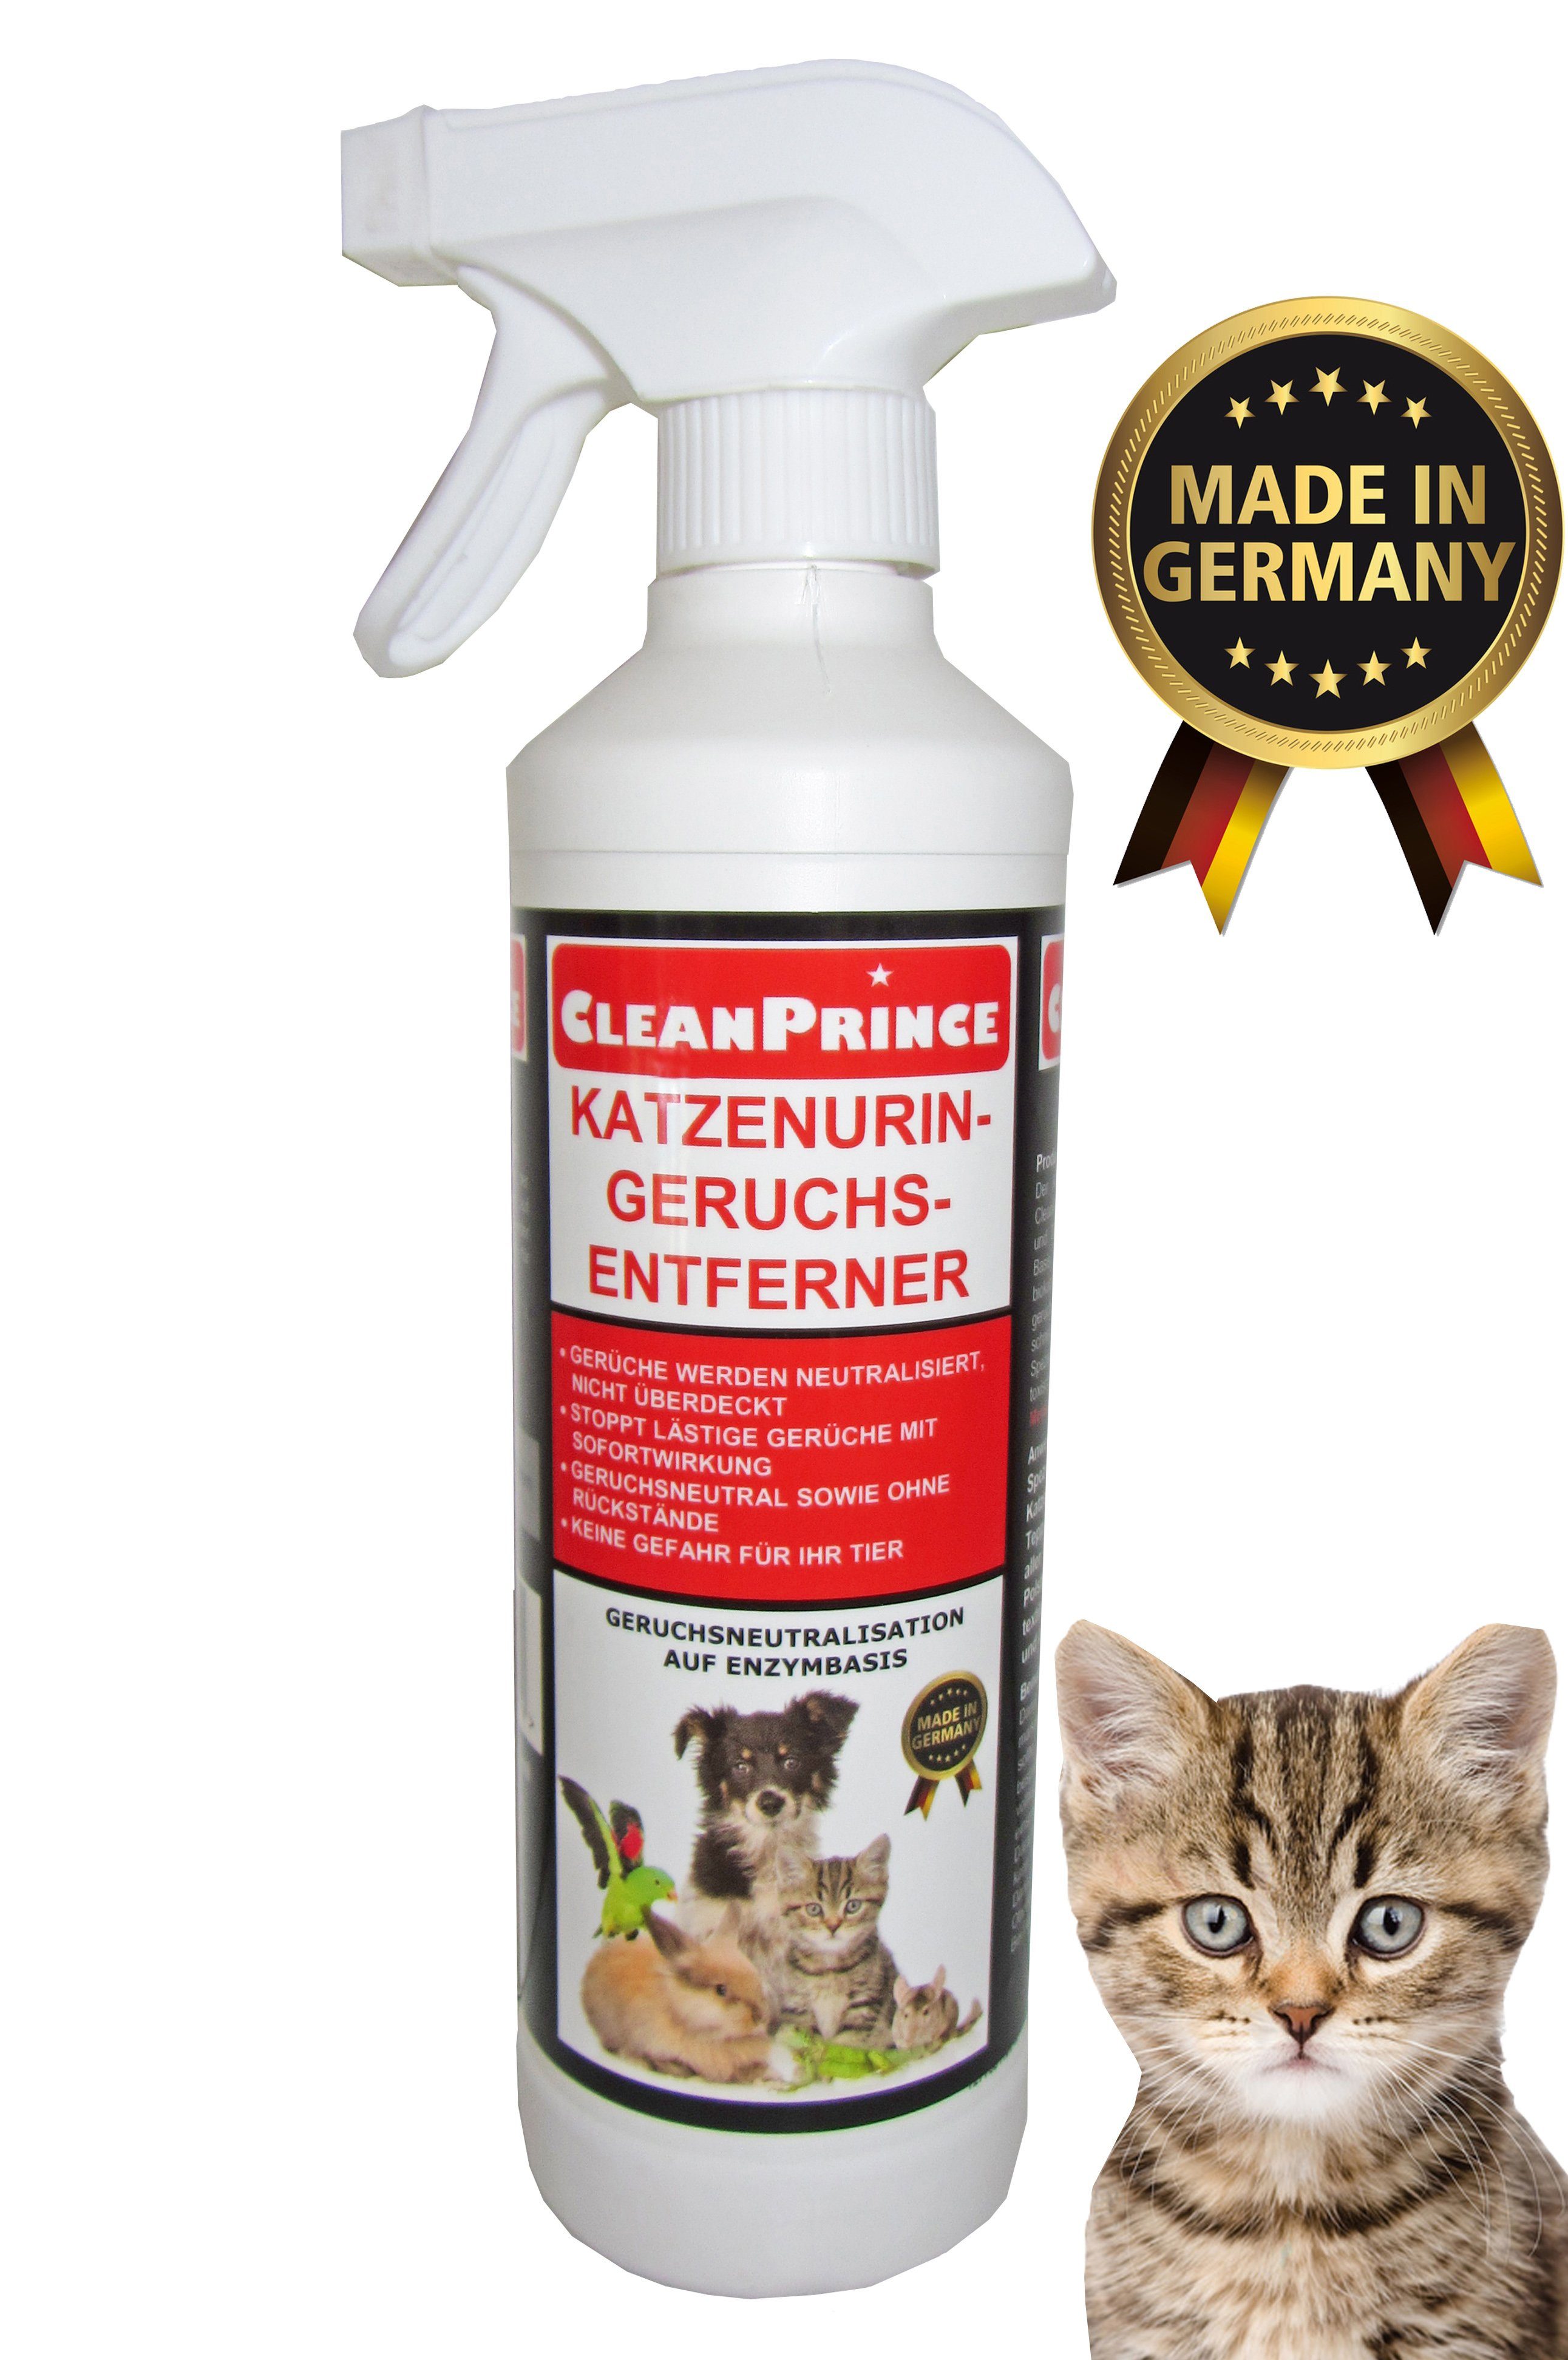 CleanPrince Raumduft Katzenurin-Geruchsentferner auf Enzymbasis